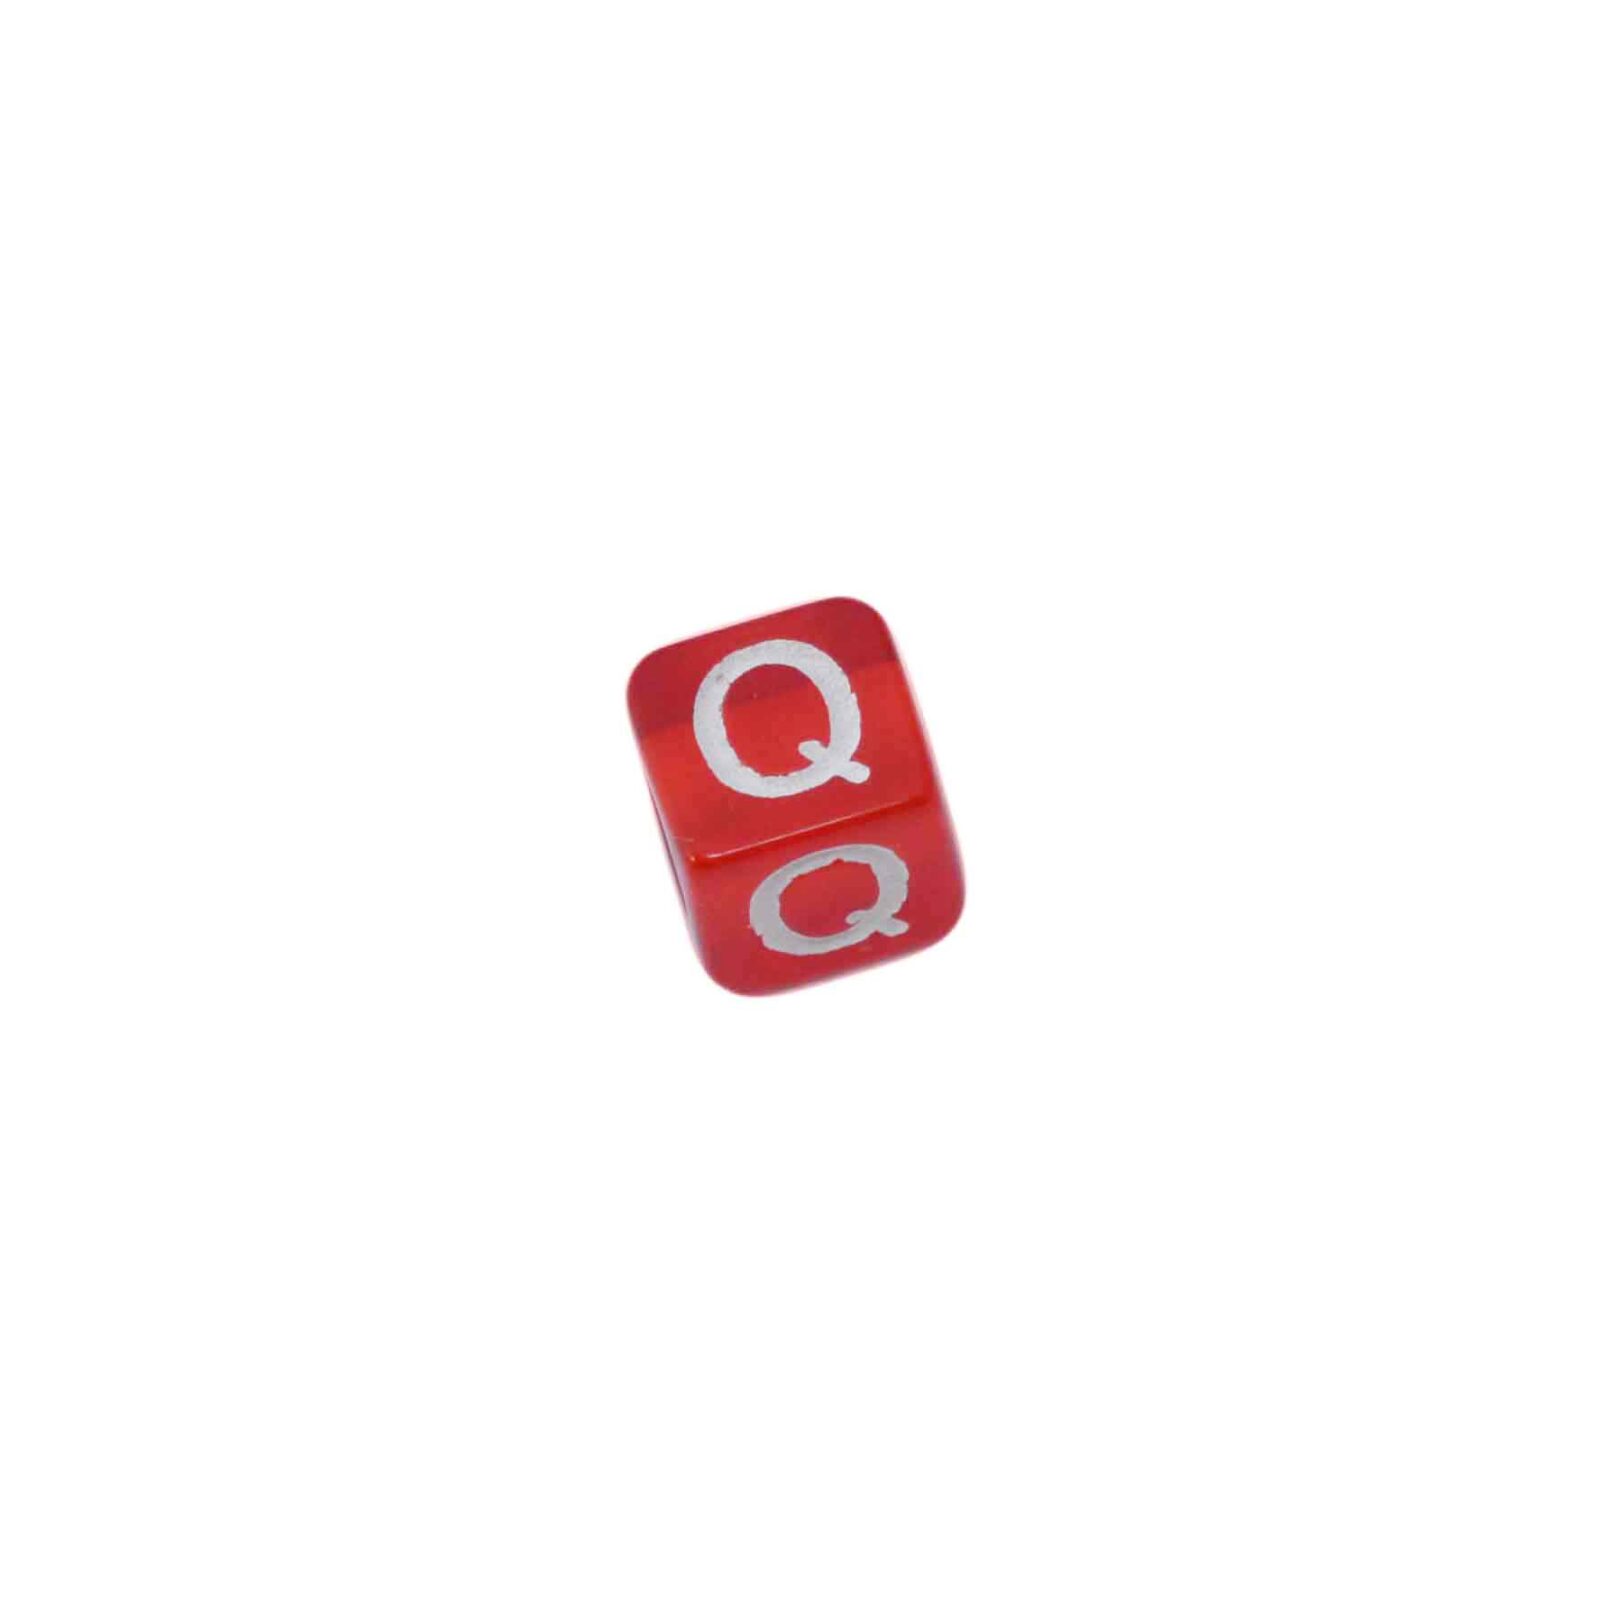 Rode letterkraal Q